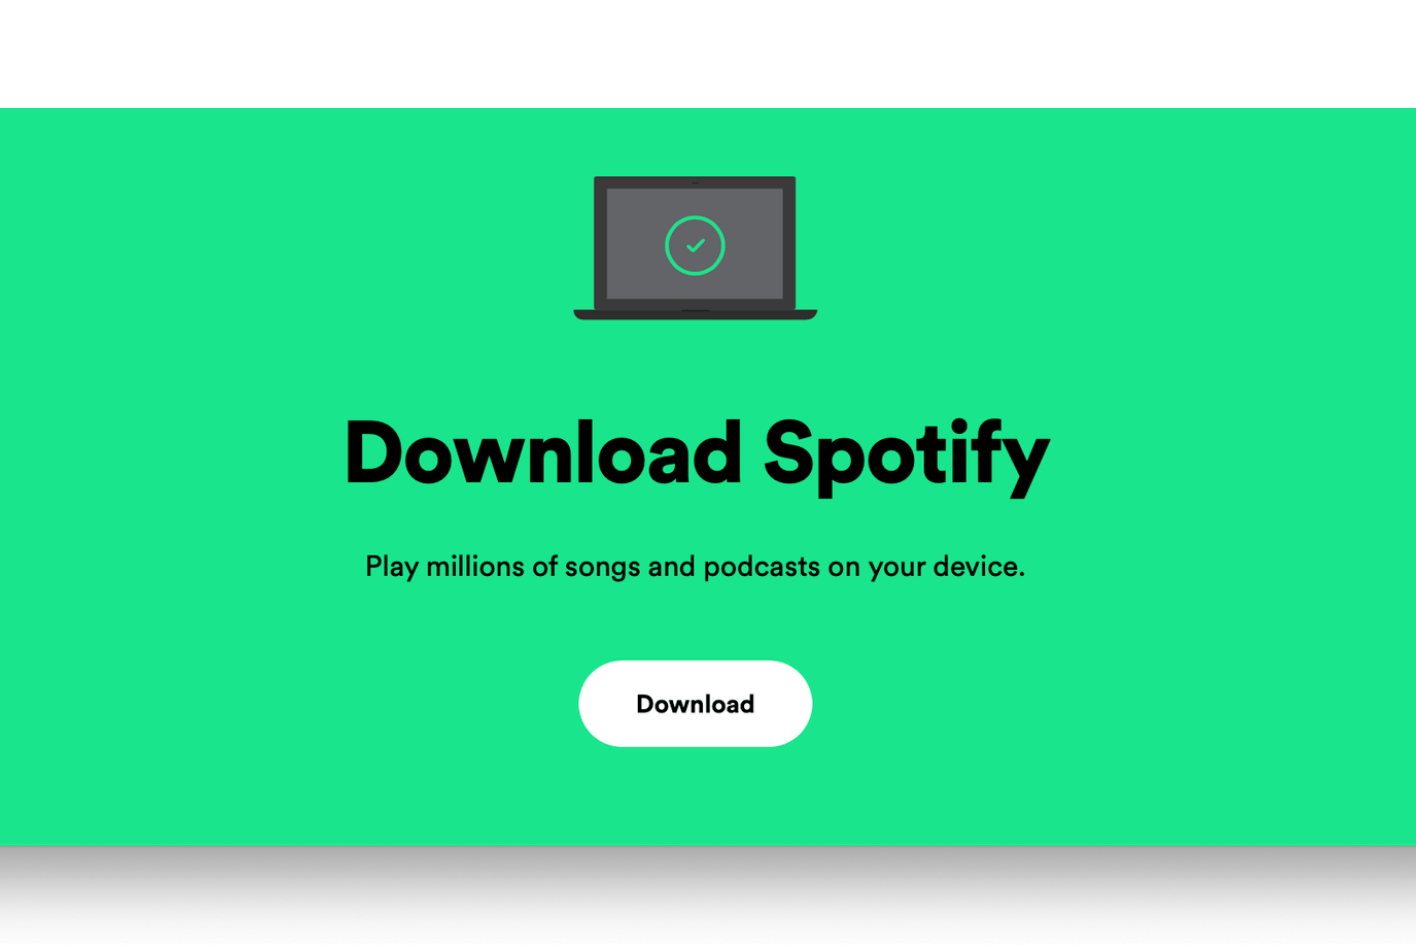 Spotifyのダウンロードページ